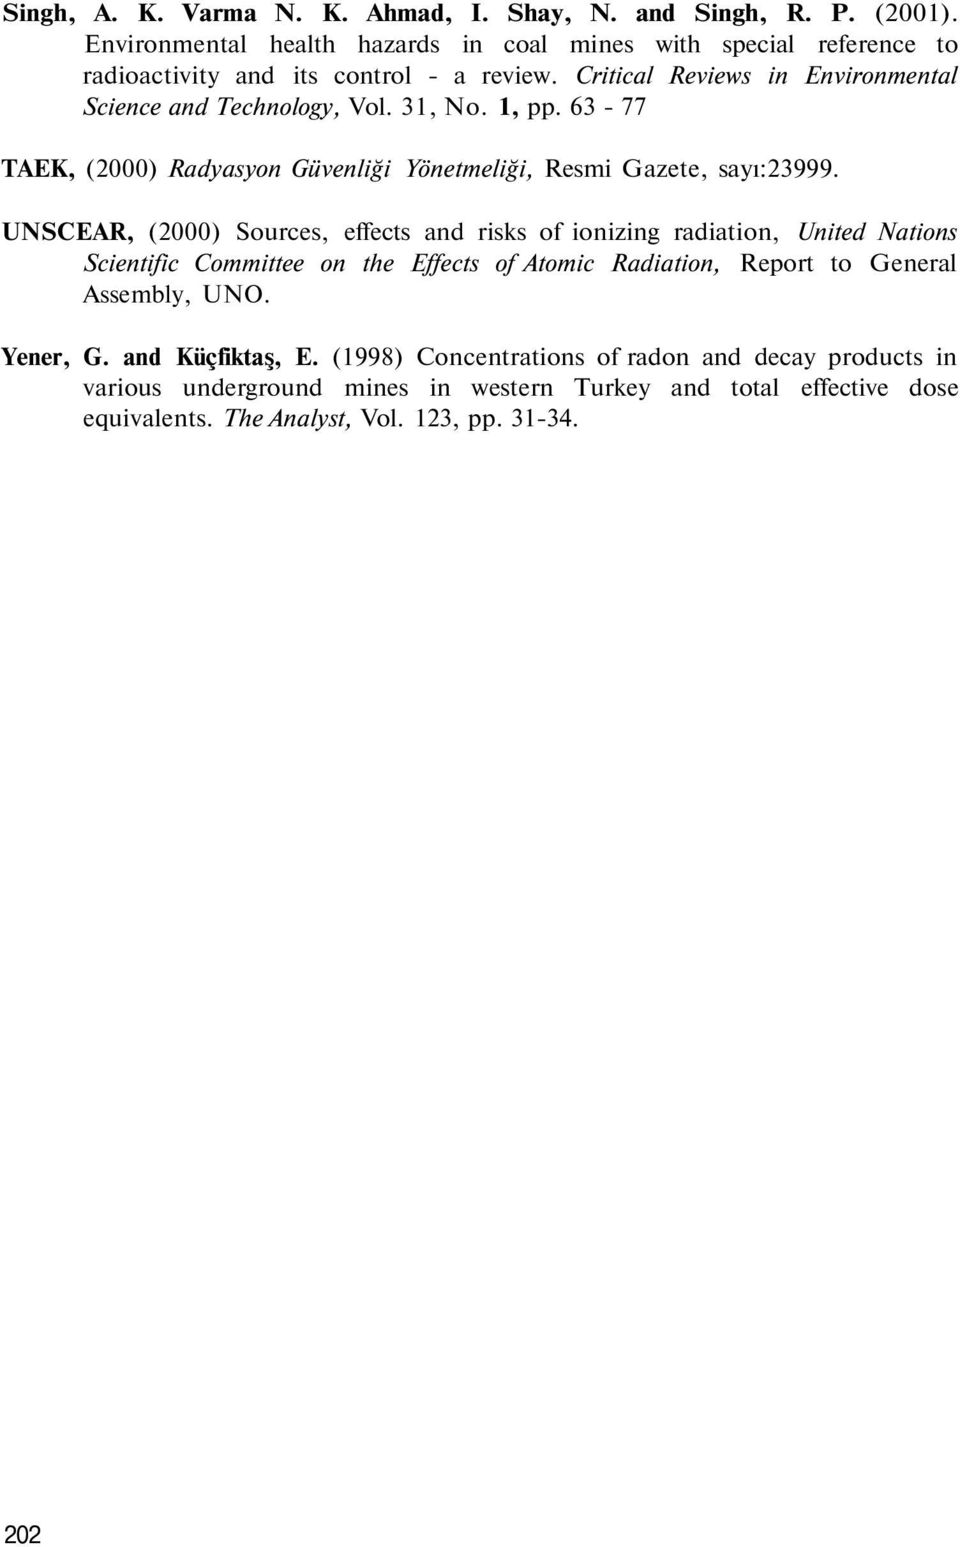 31, No. 1, pp. 63-77 TAEK, (2000) Radyasyon Güvenliği Yönetmeliği, Resmi Gazete, sayı:23999.